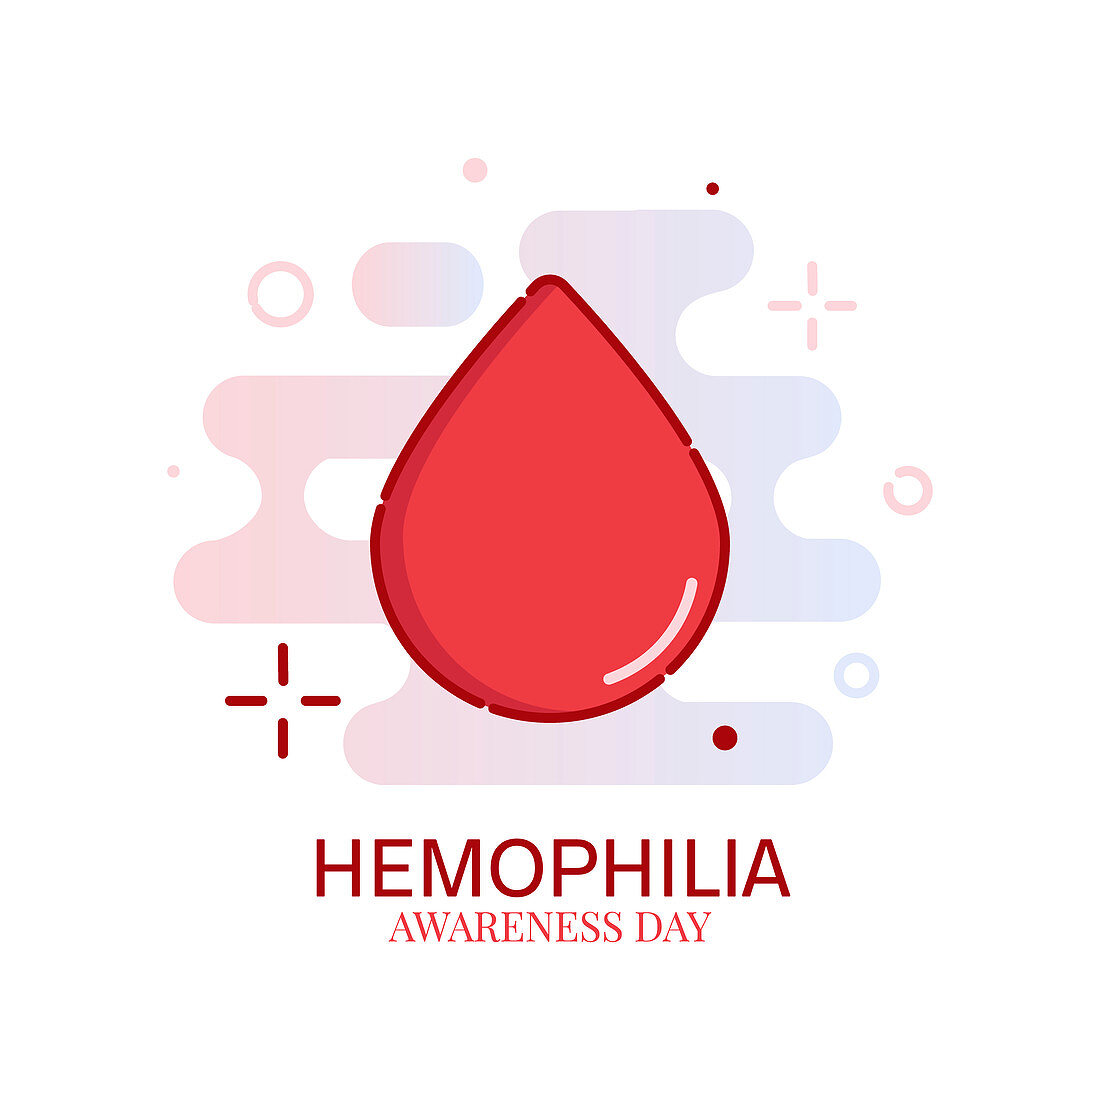 Haemophilia, conceptual illustration